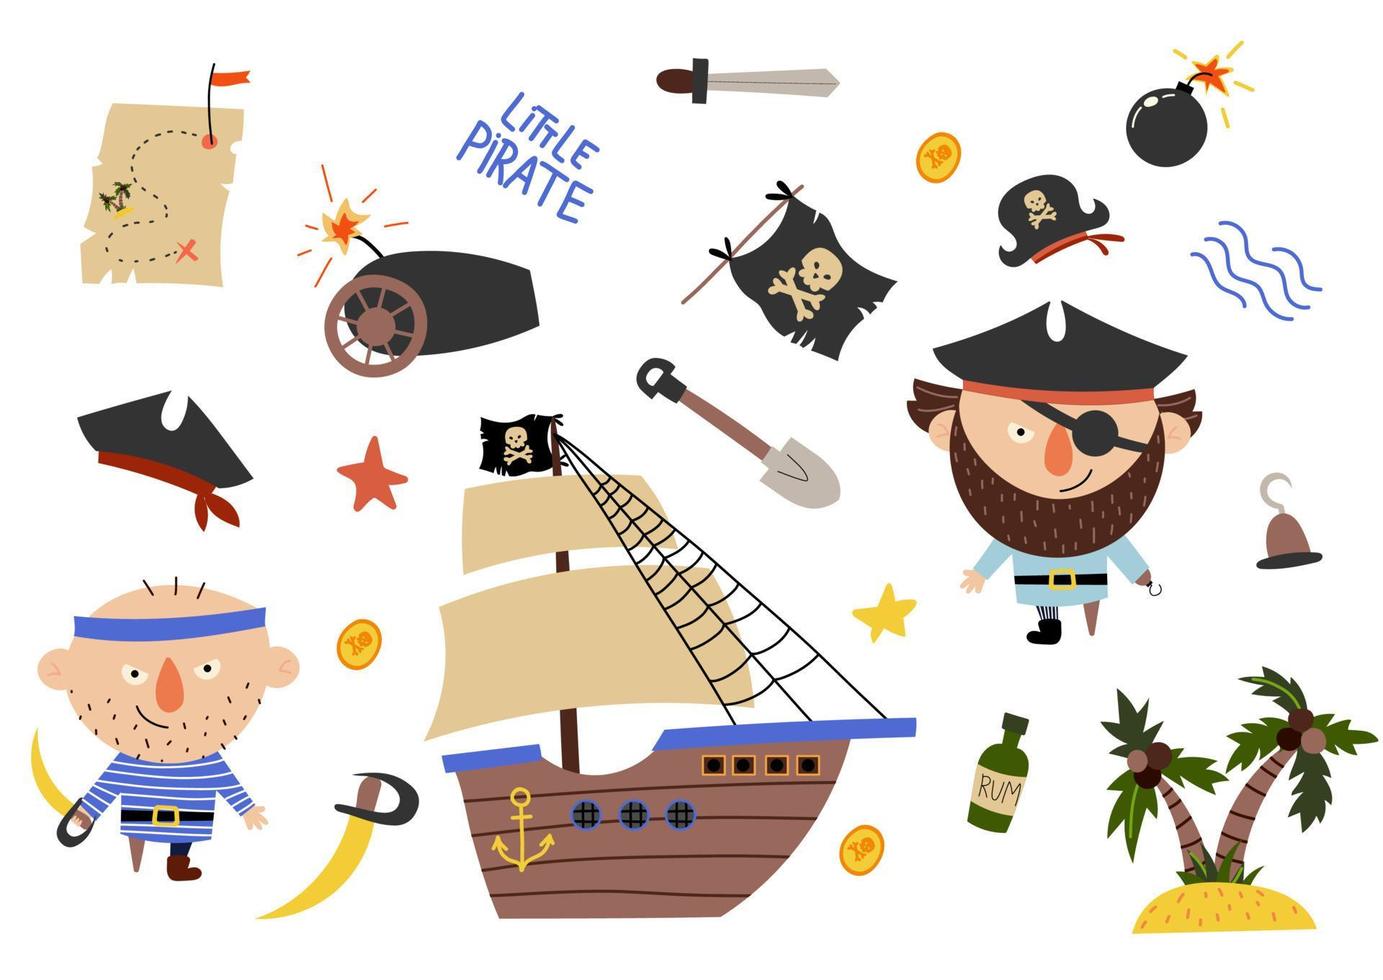 härlig piratuppsättning i tecknad stil. sött kort med pirater, skepp, rom, ankare, skatt, ö. fantastisk bakgrund i ljusa färger vektor